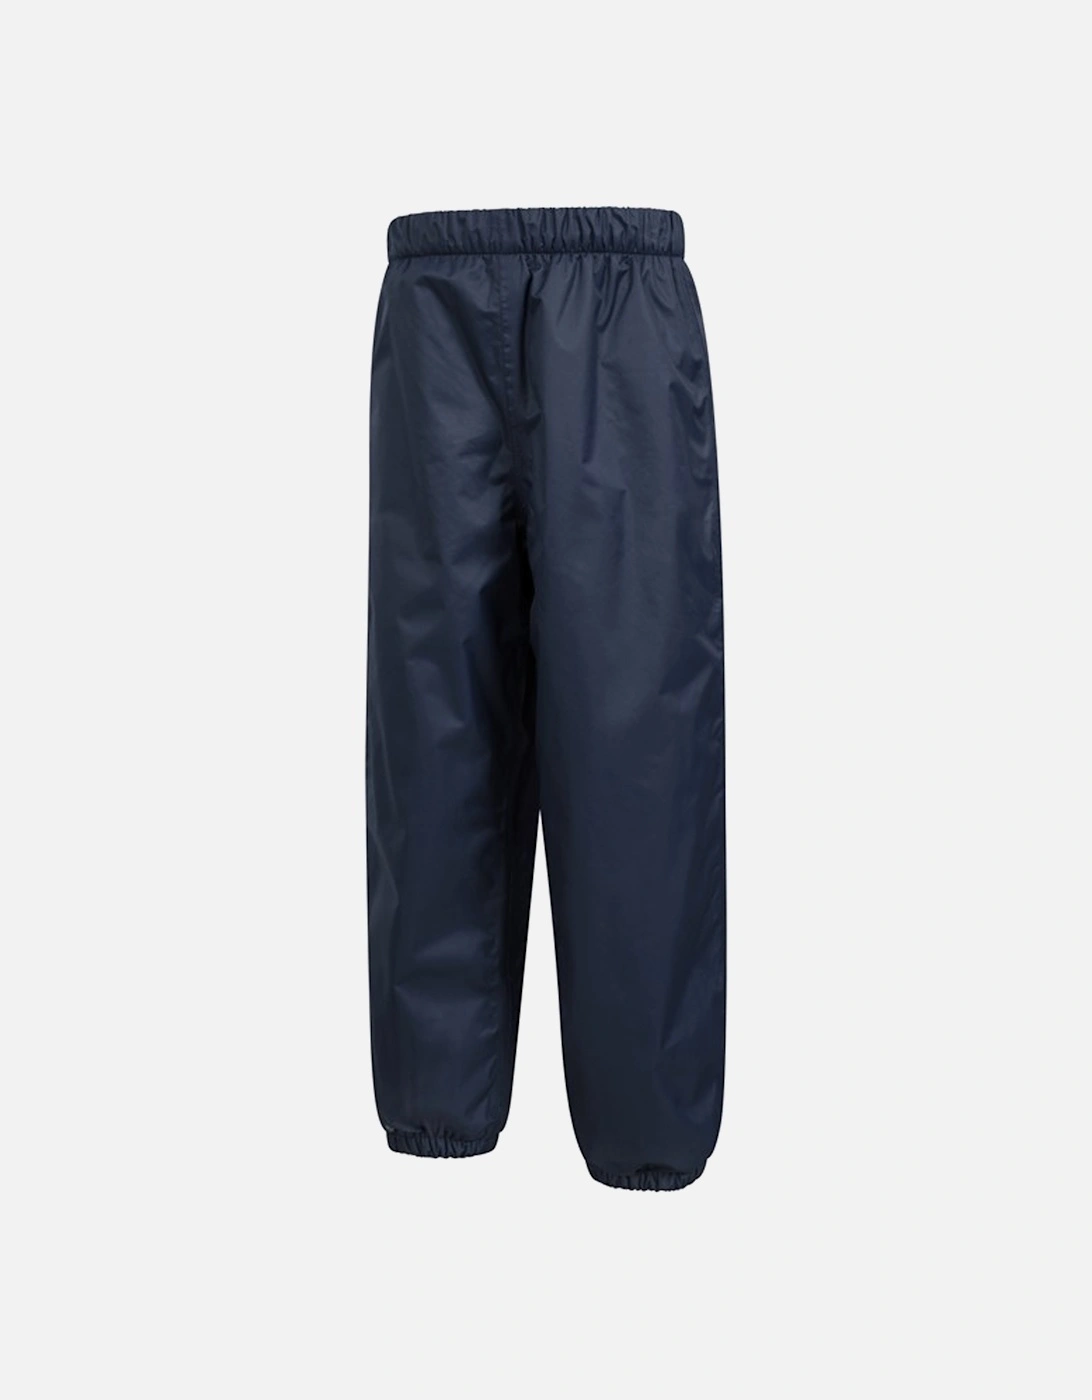 Childrens/Kids Fleece Lined Waterproof Trousers